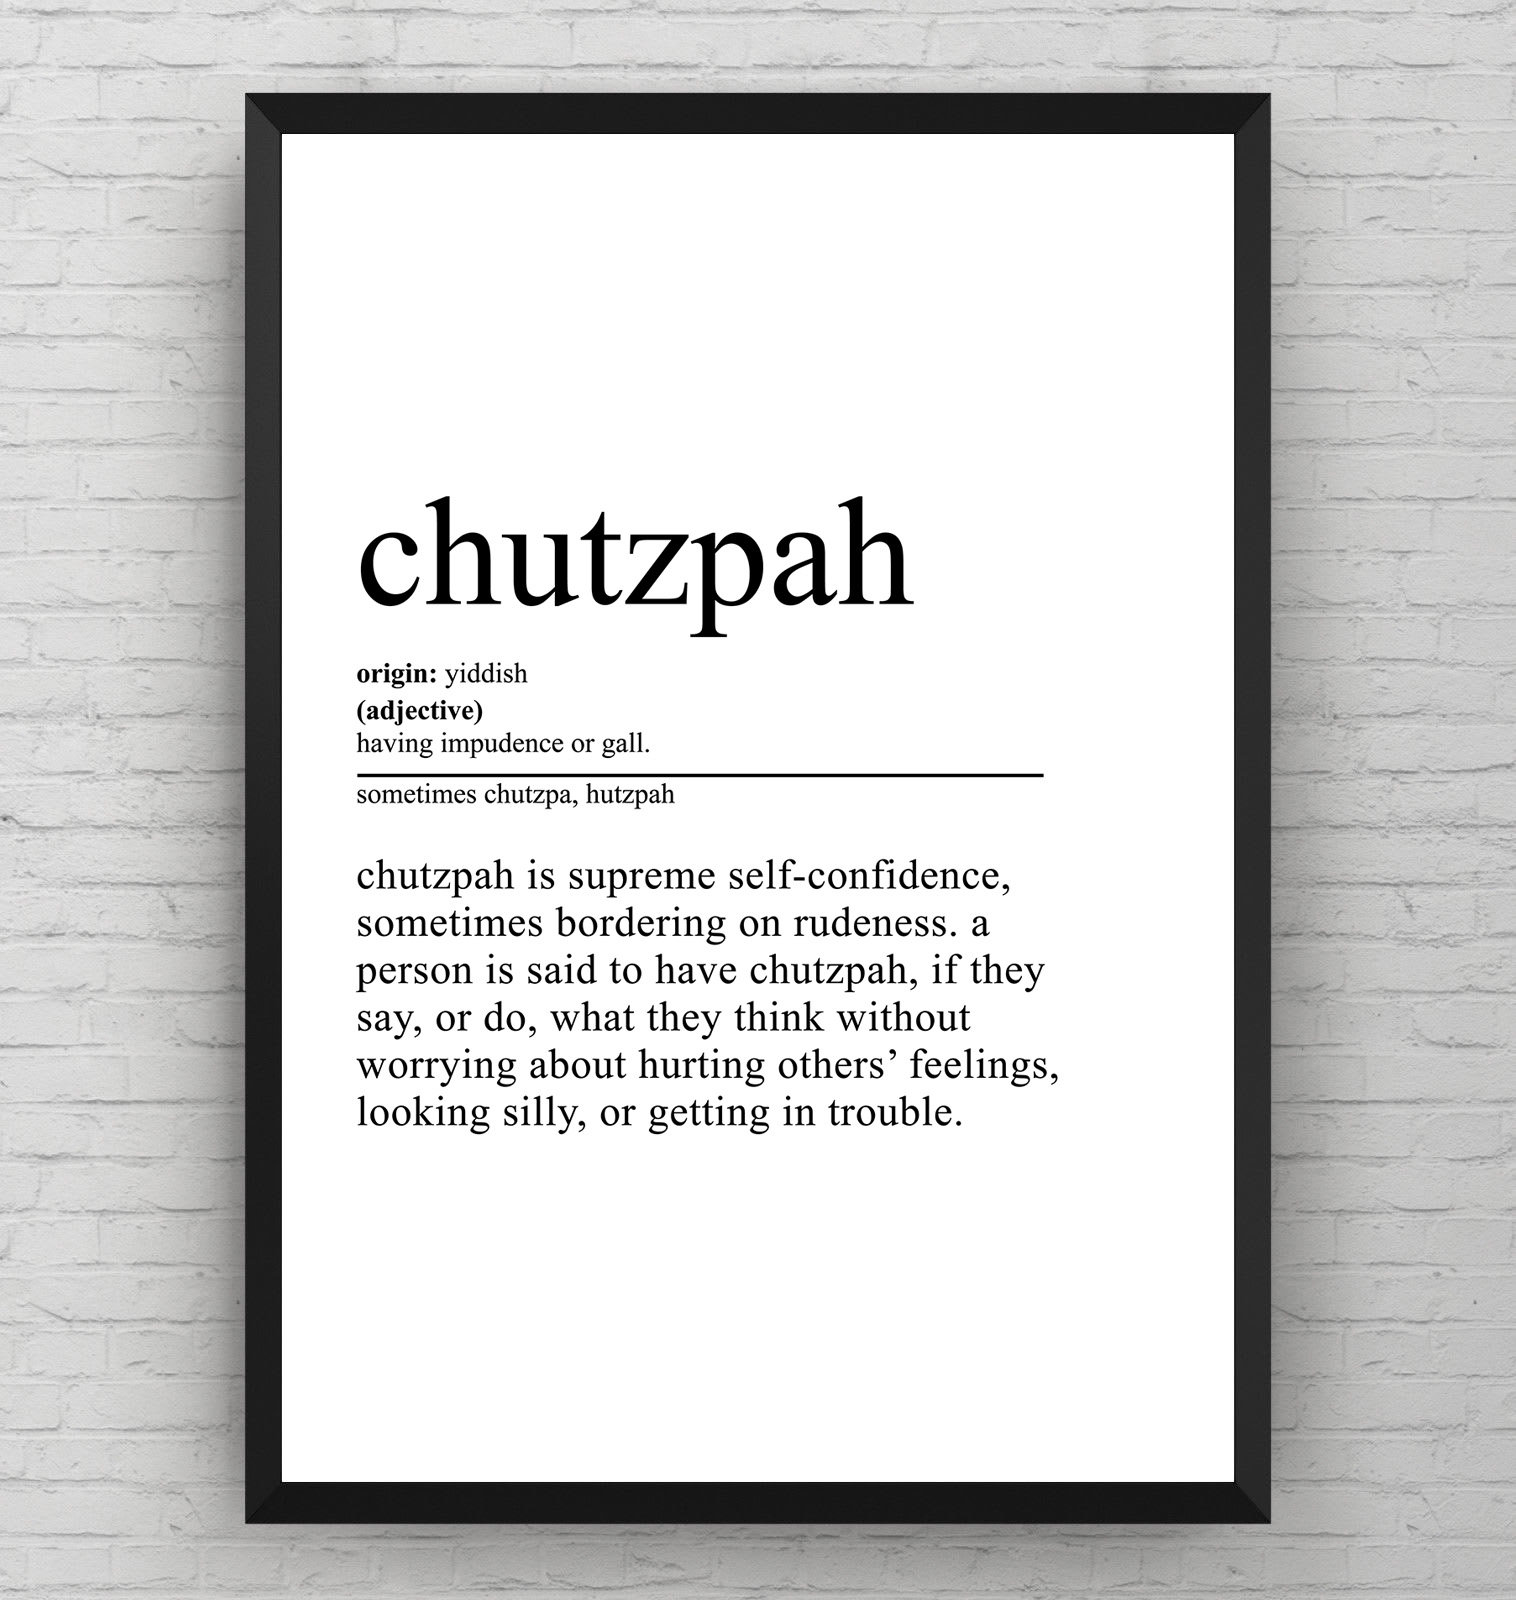 Examples of chutzpah - Deepstash